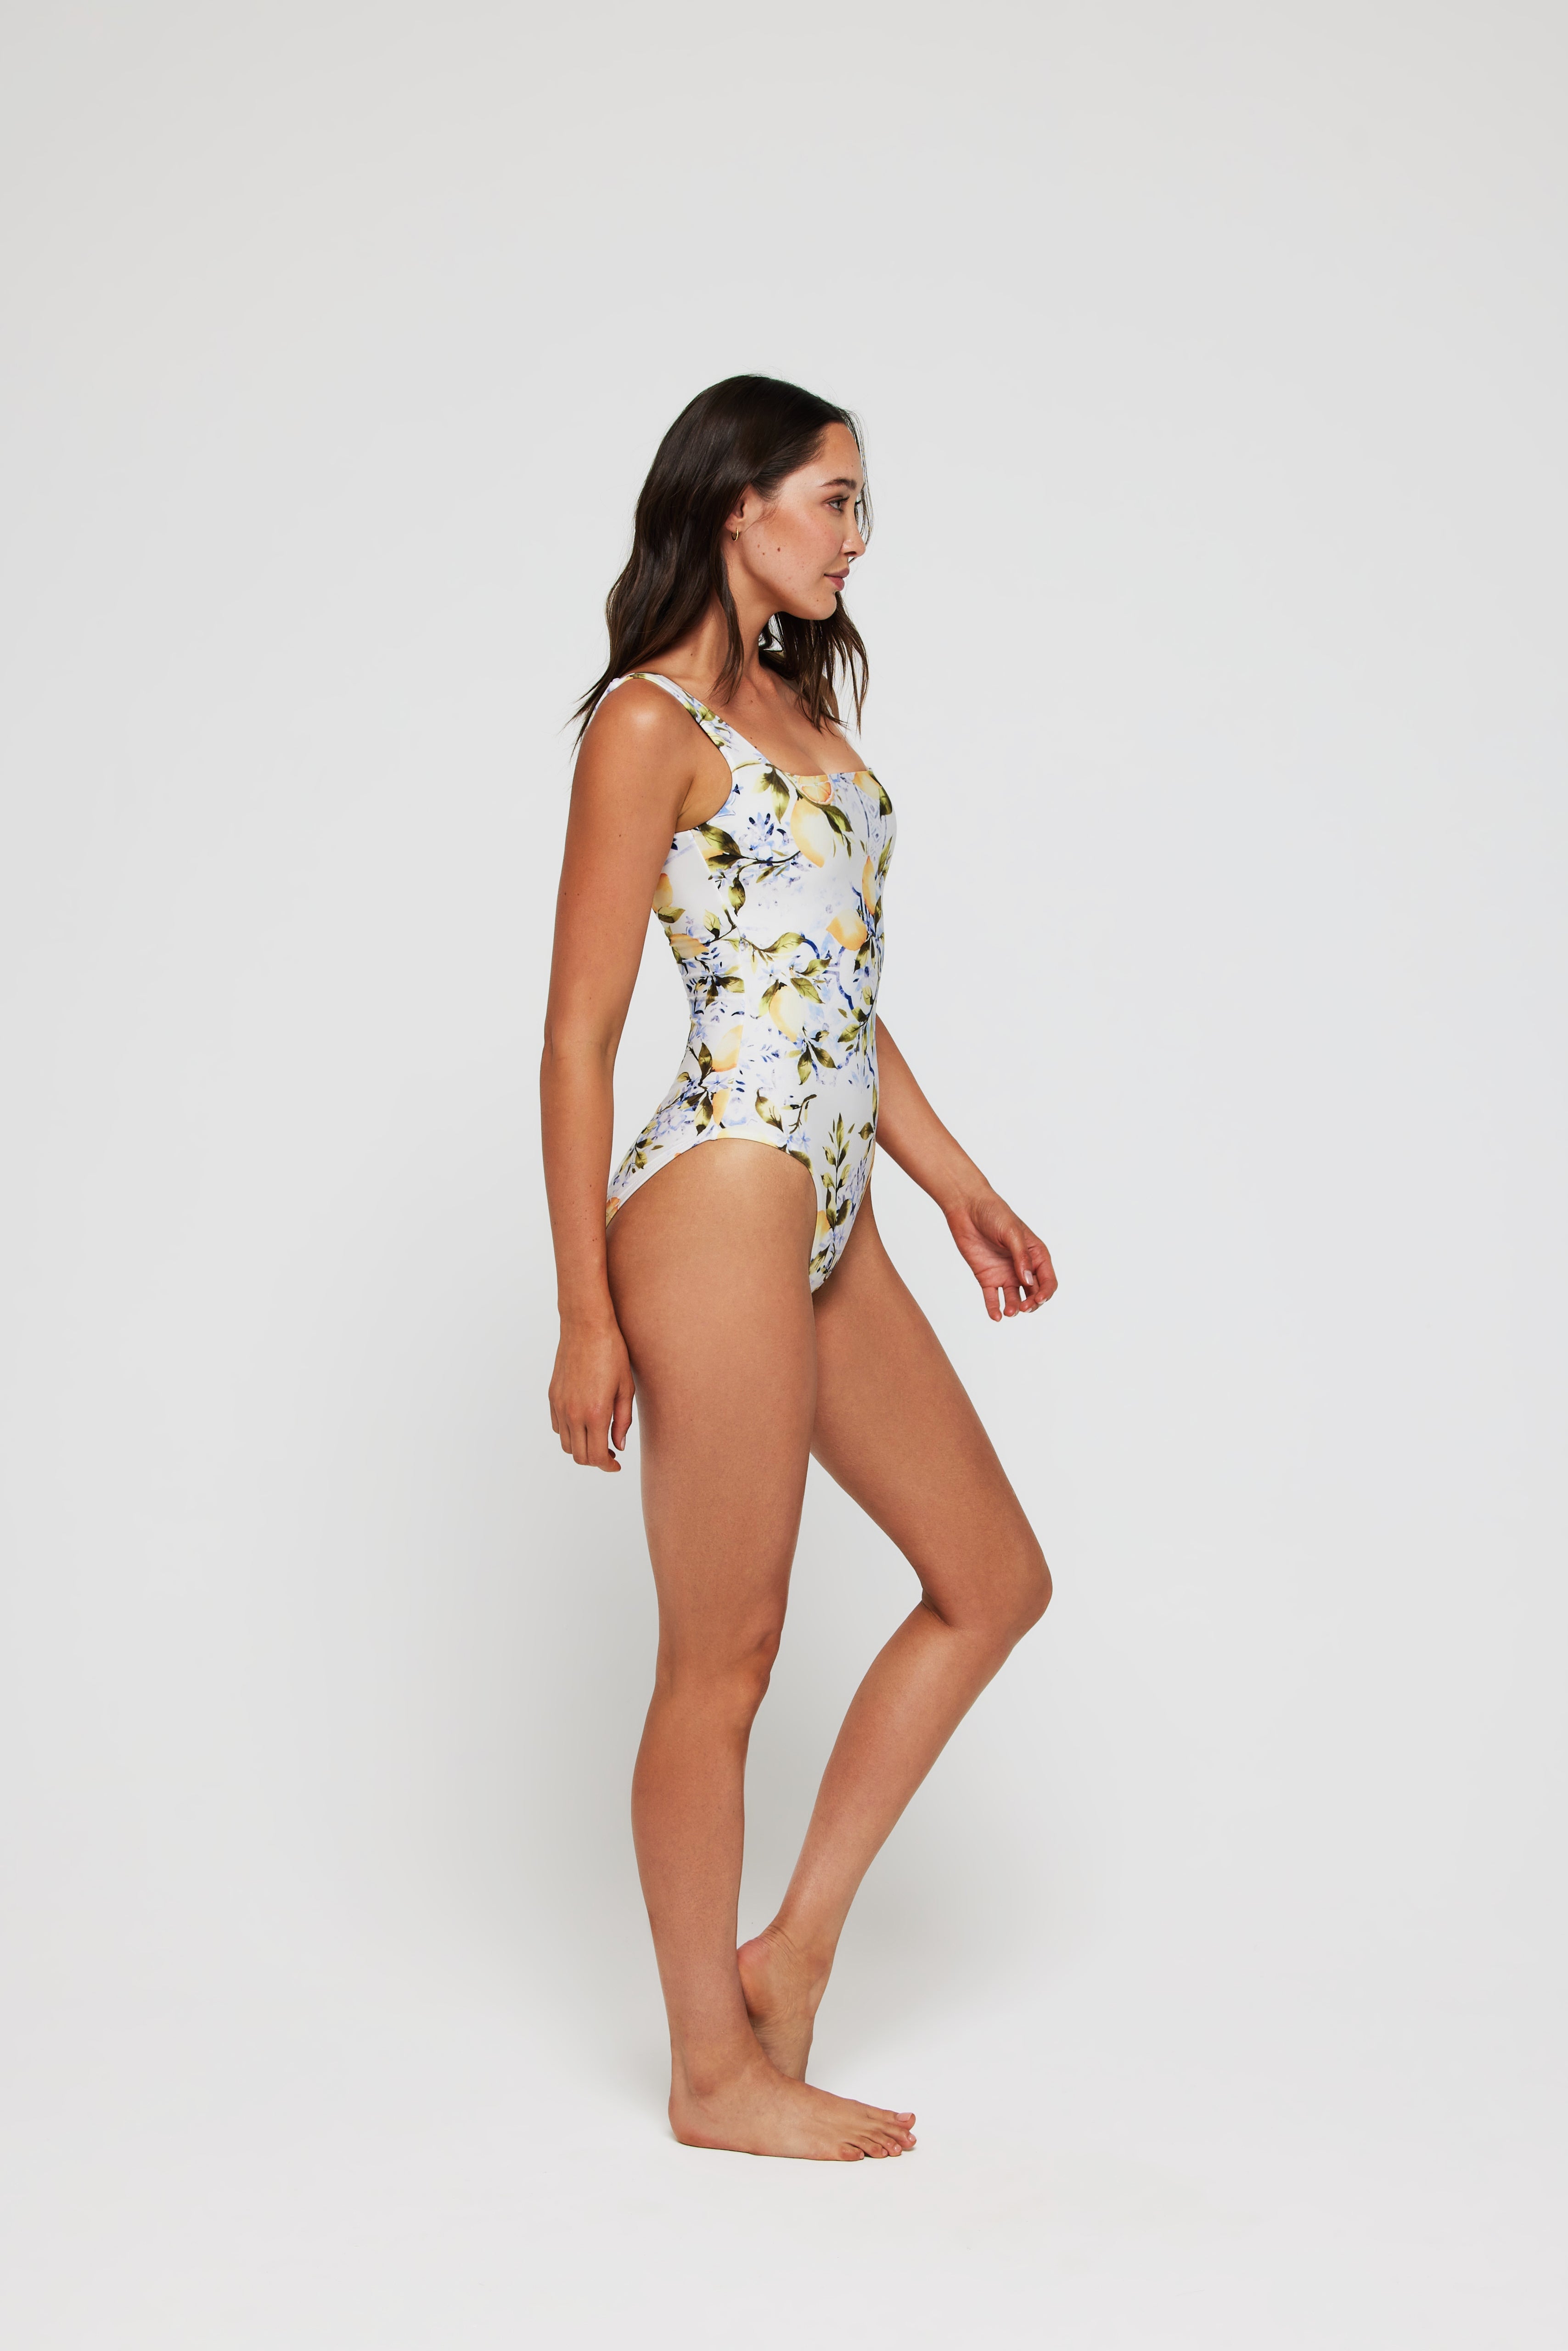 Janece One-piece Swimsuit by Hermoza